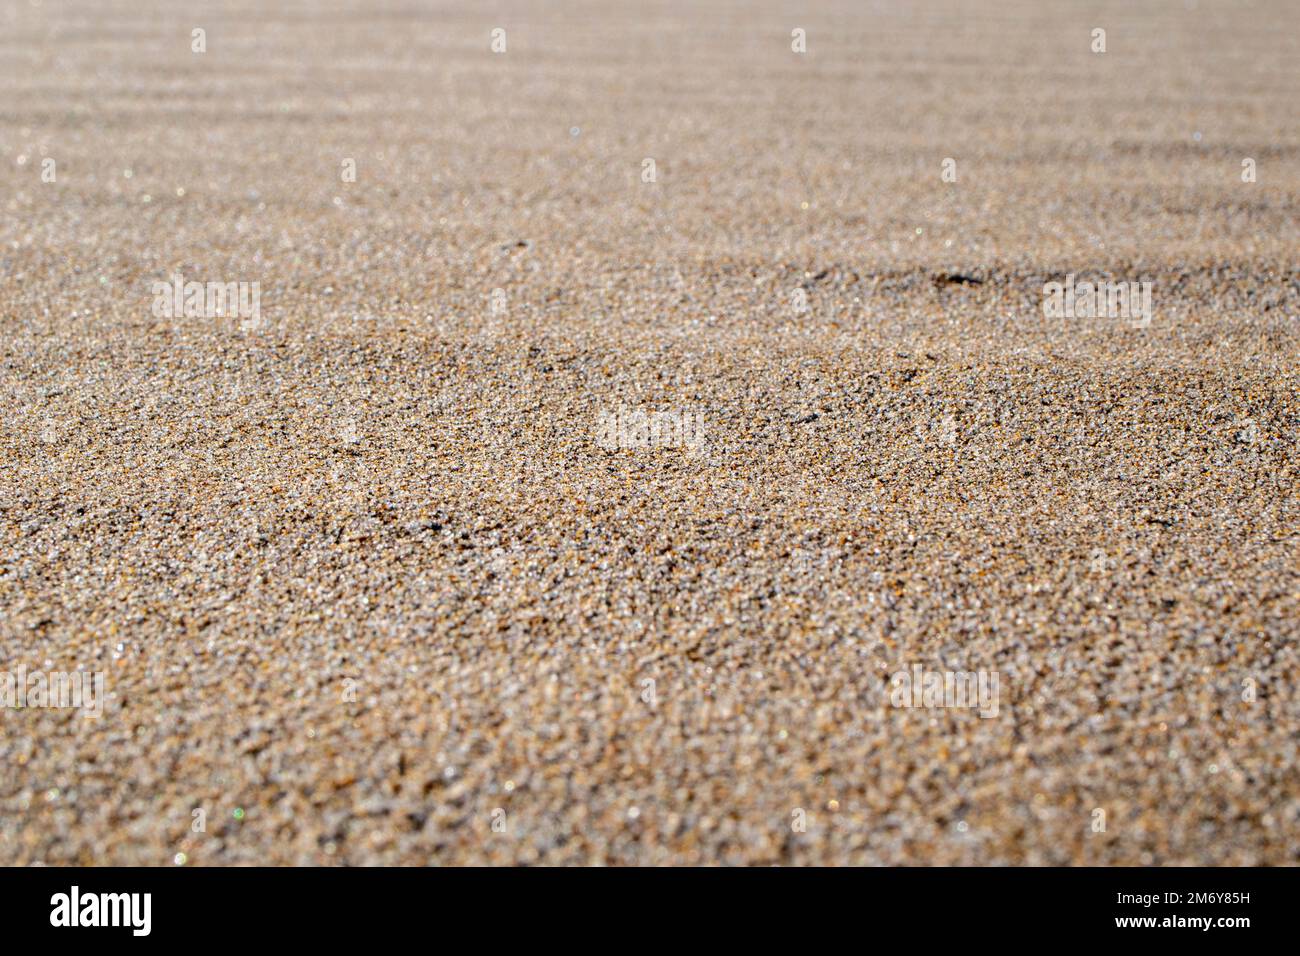 Sandtextur und Hintergrund. Sand am Strand im Hintergrund. Sandstrand für schwarzen Hintergrund. Sand an einem Strand im Sommer. Kopierbereich. Sommerkonzept Stockfoto